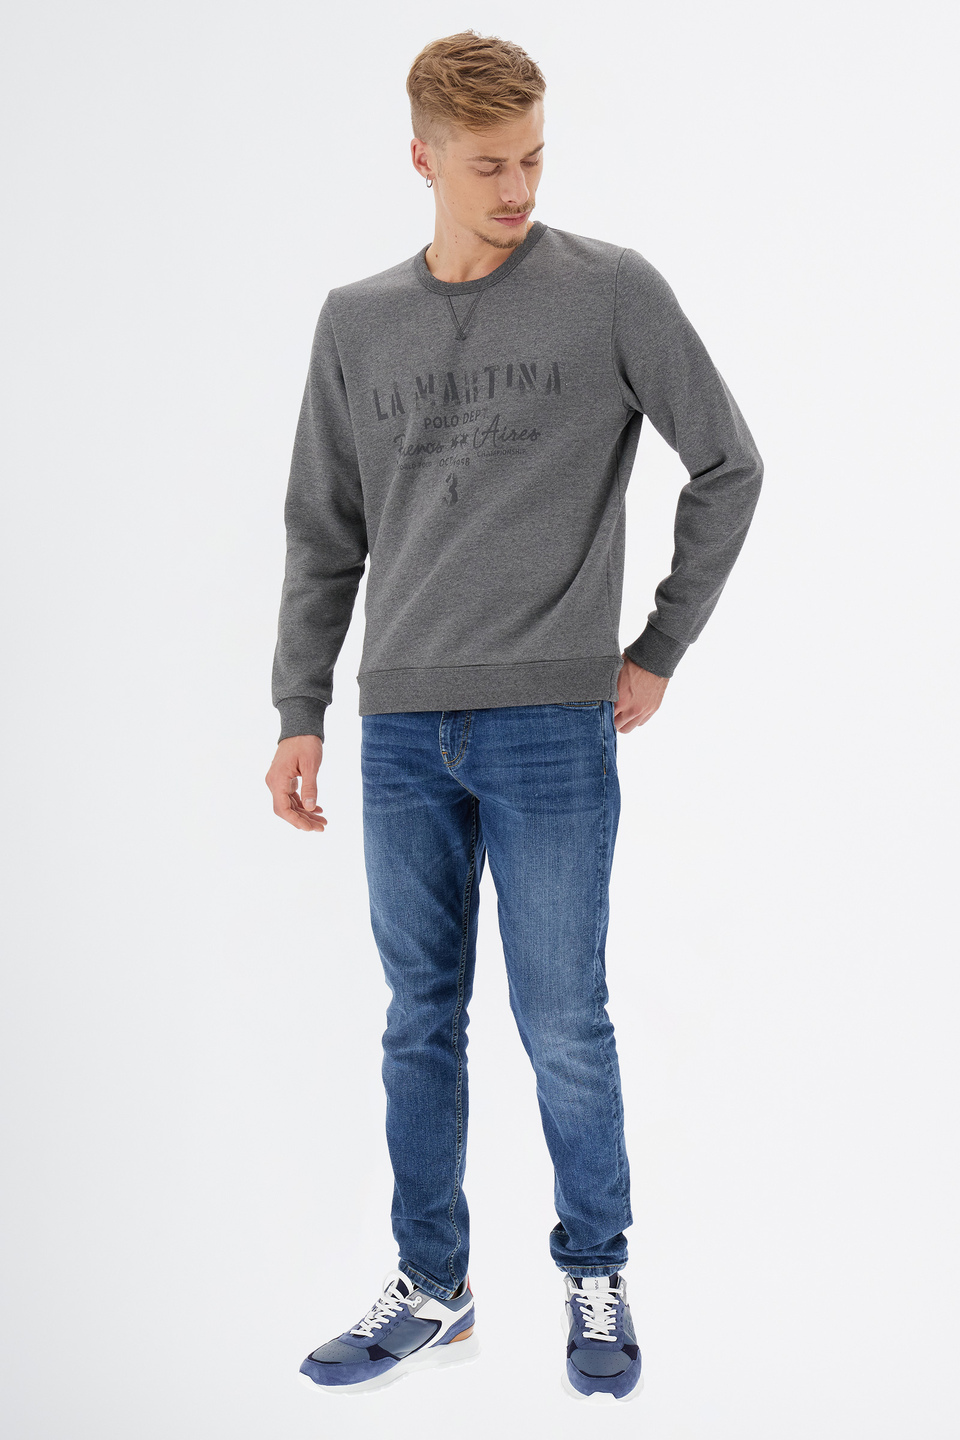 Herren-Sweatshirt Leyendas Del Polo mit langen Ärmeln aus Fleece-Baumwolle | La Martina - Official Online Shop